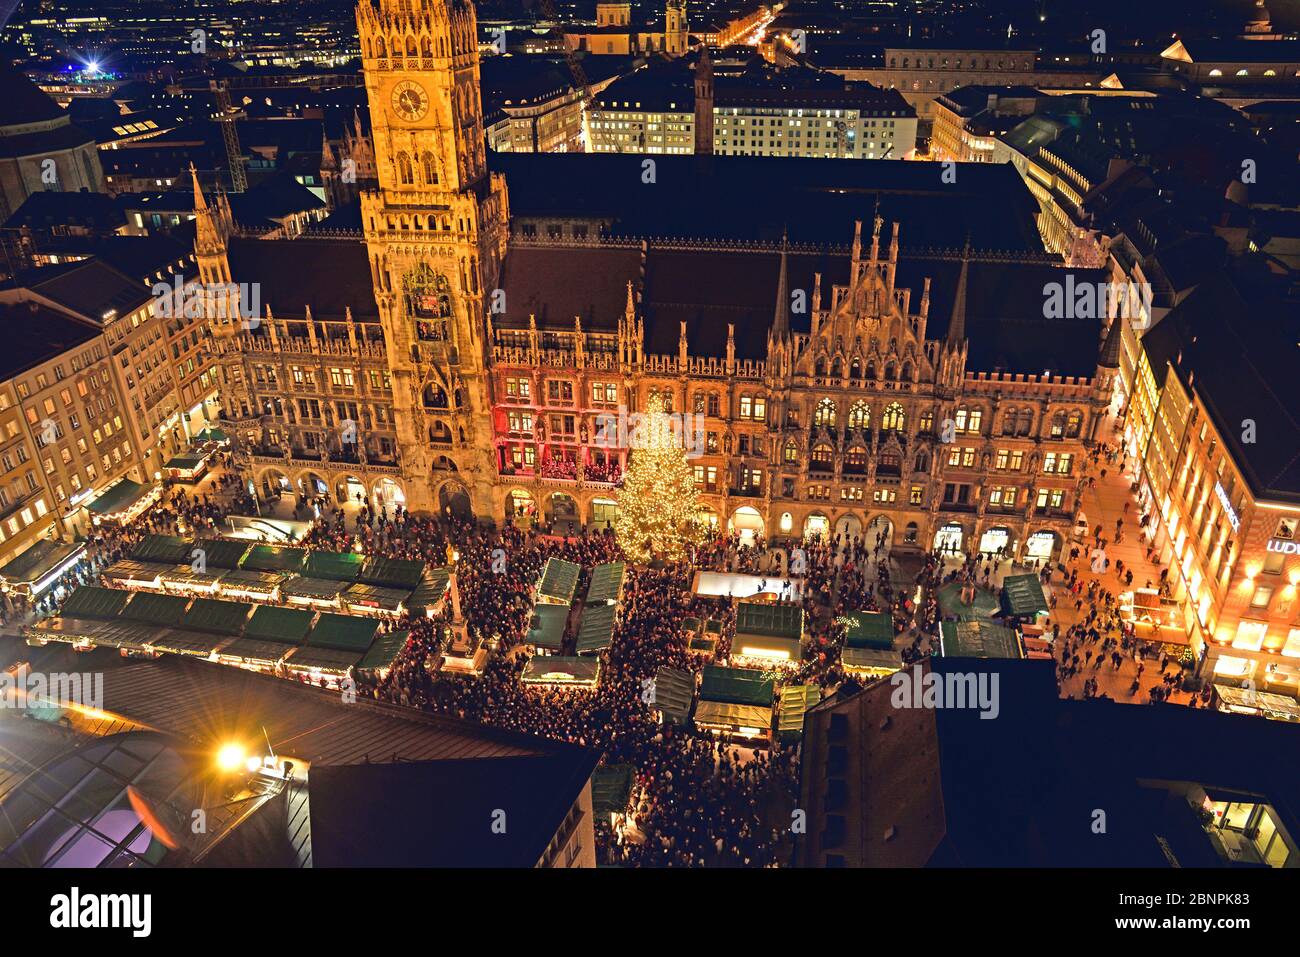 Europa, Deutschland, Bayern, München, Blick von St. Peter, Marienplatz, Weihnachten, Neues Rathaus, Abend, Weihnachtsmarkt, Weihnachtsbaum, Stockfoto